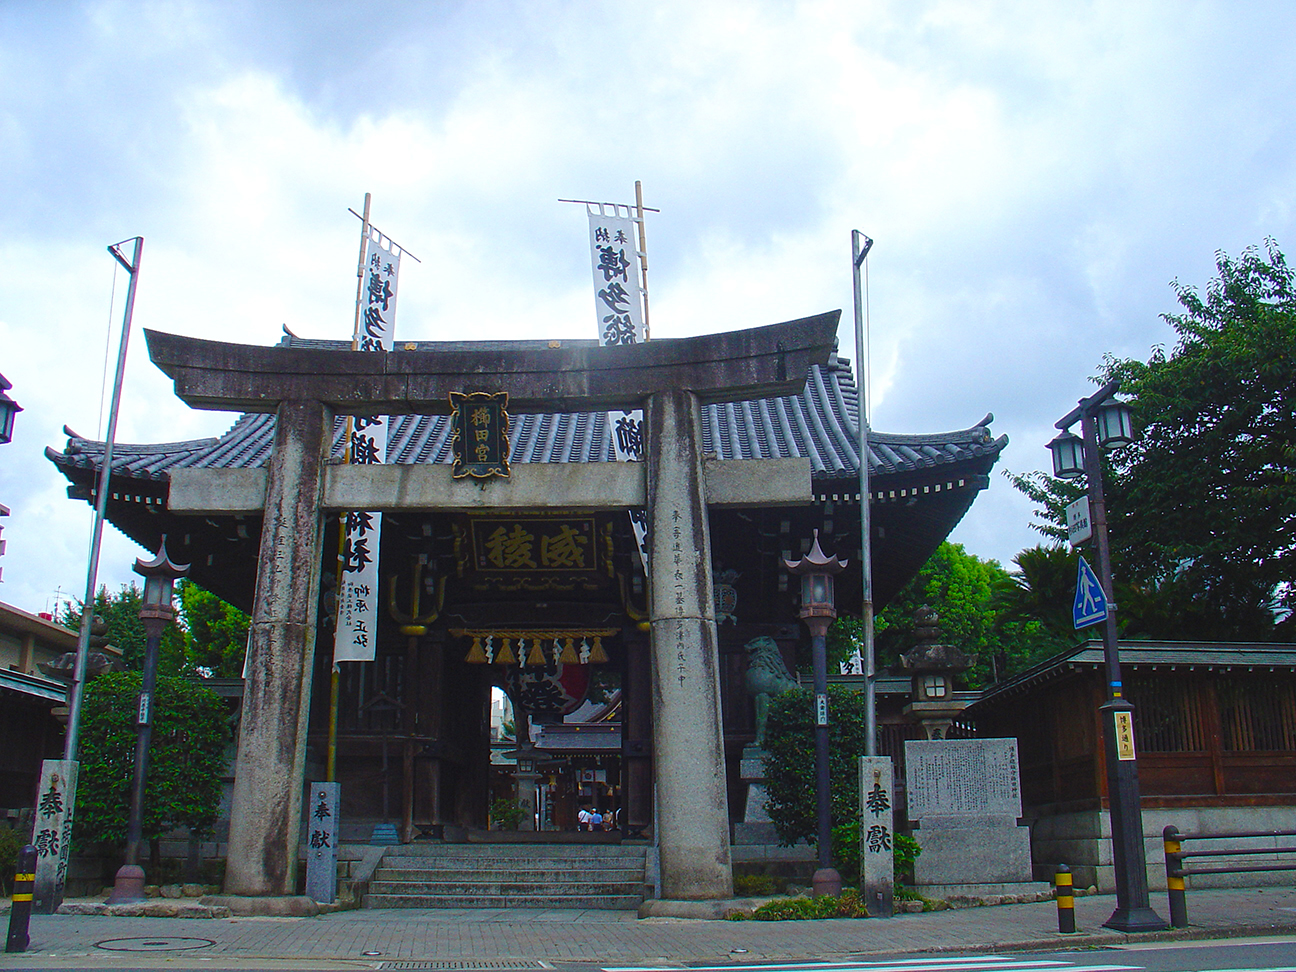 櫛田神社 - Kushida Shrine entrance Gate.